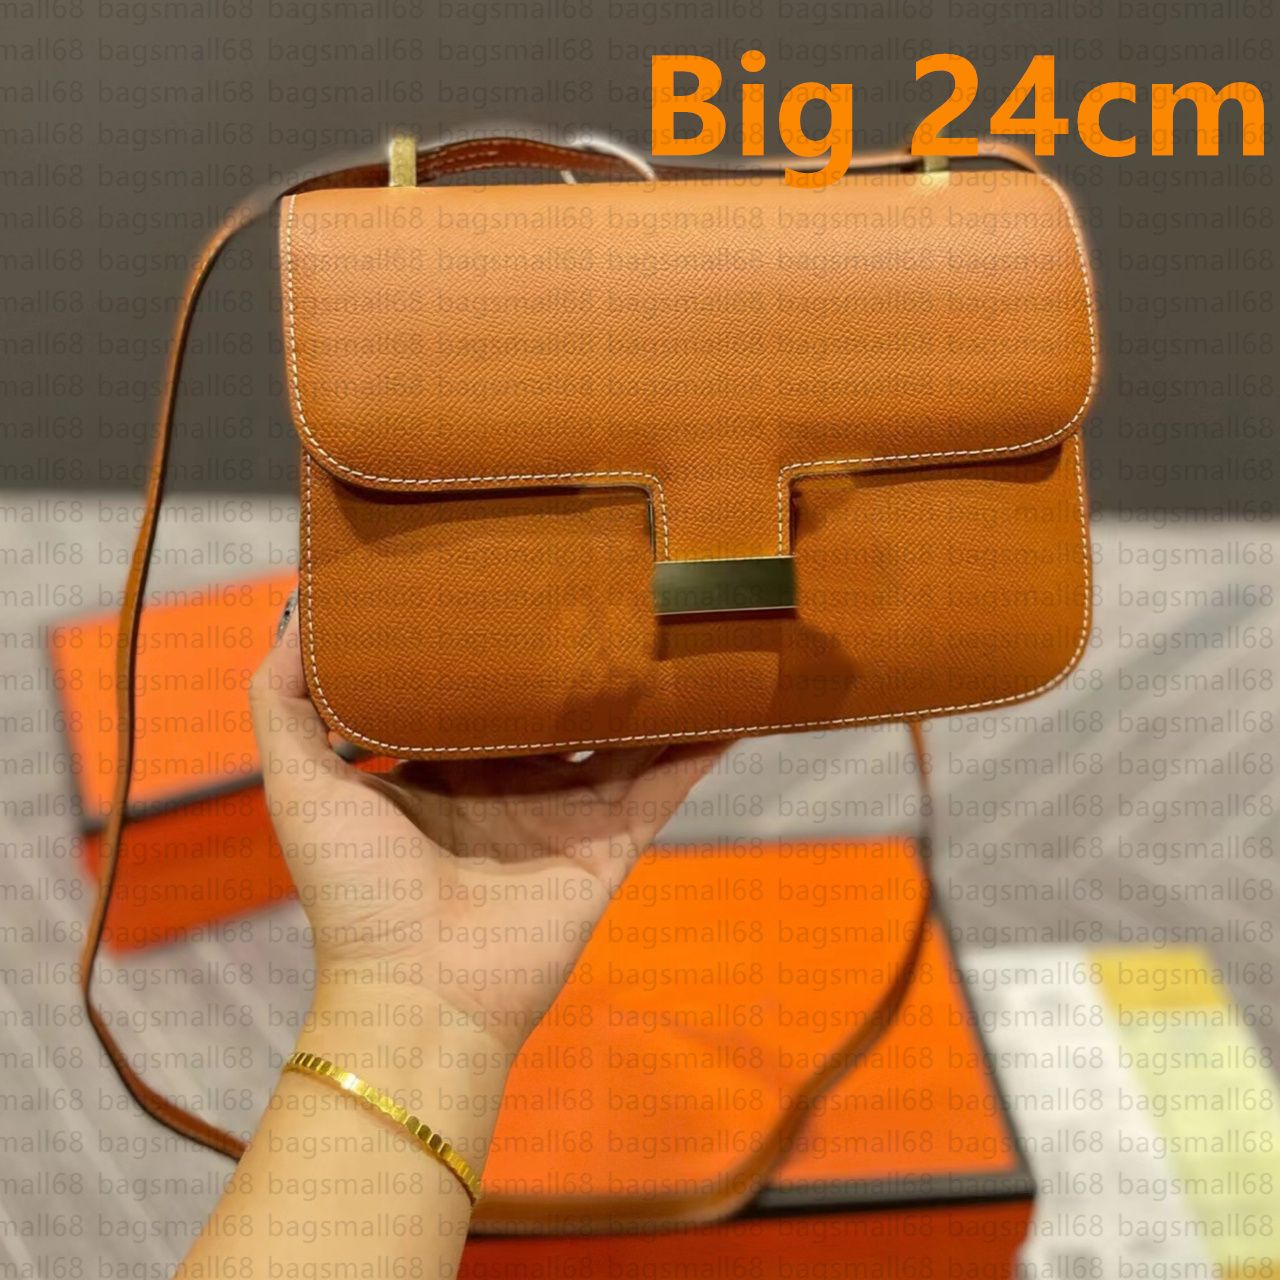 Big /24 cm marrone